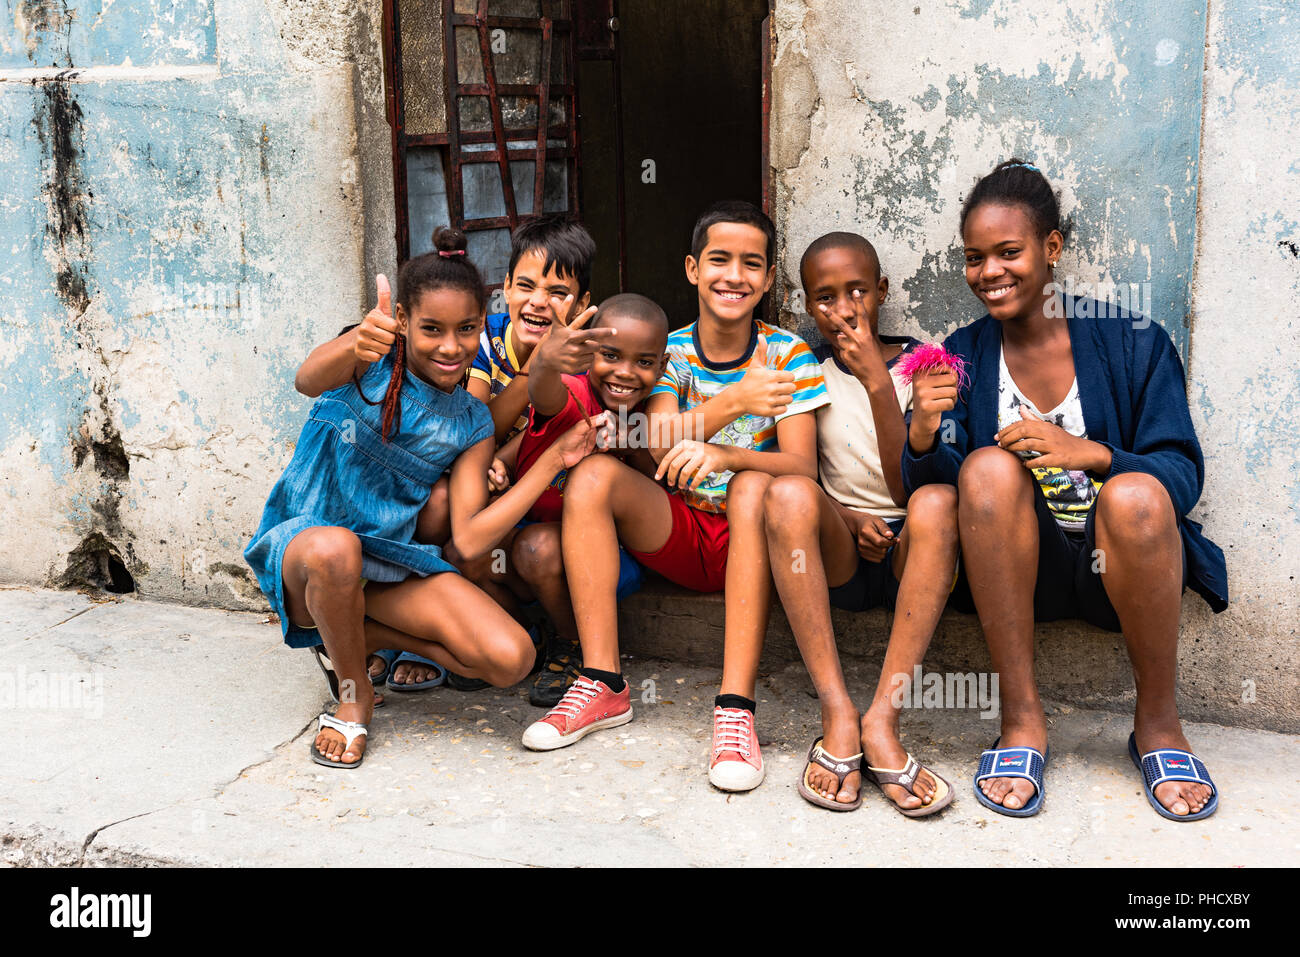 Vielfältige Gruppe von Kindern sehnsüchtig auf Präsident Obamas historischer Besuch in Kuba sind aufgeregt und glücklich zu sehen Amerikaner in der Altstadt von Havanna. Stockfoto